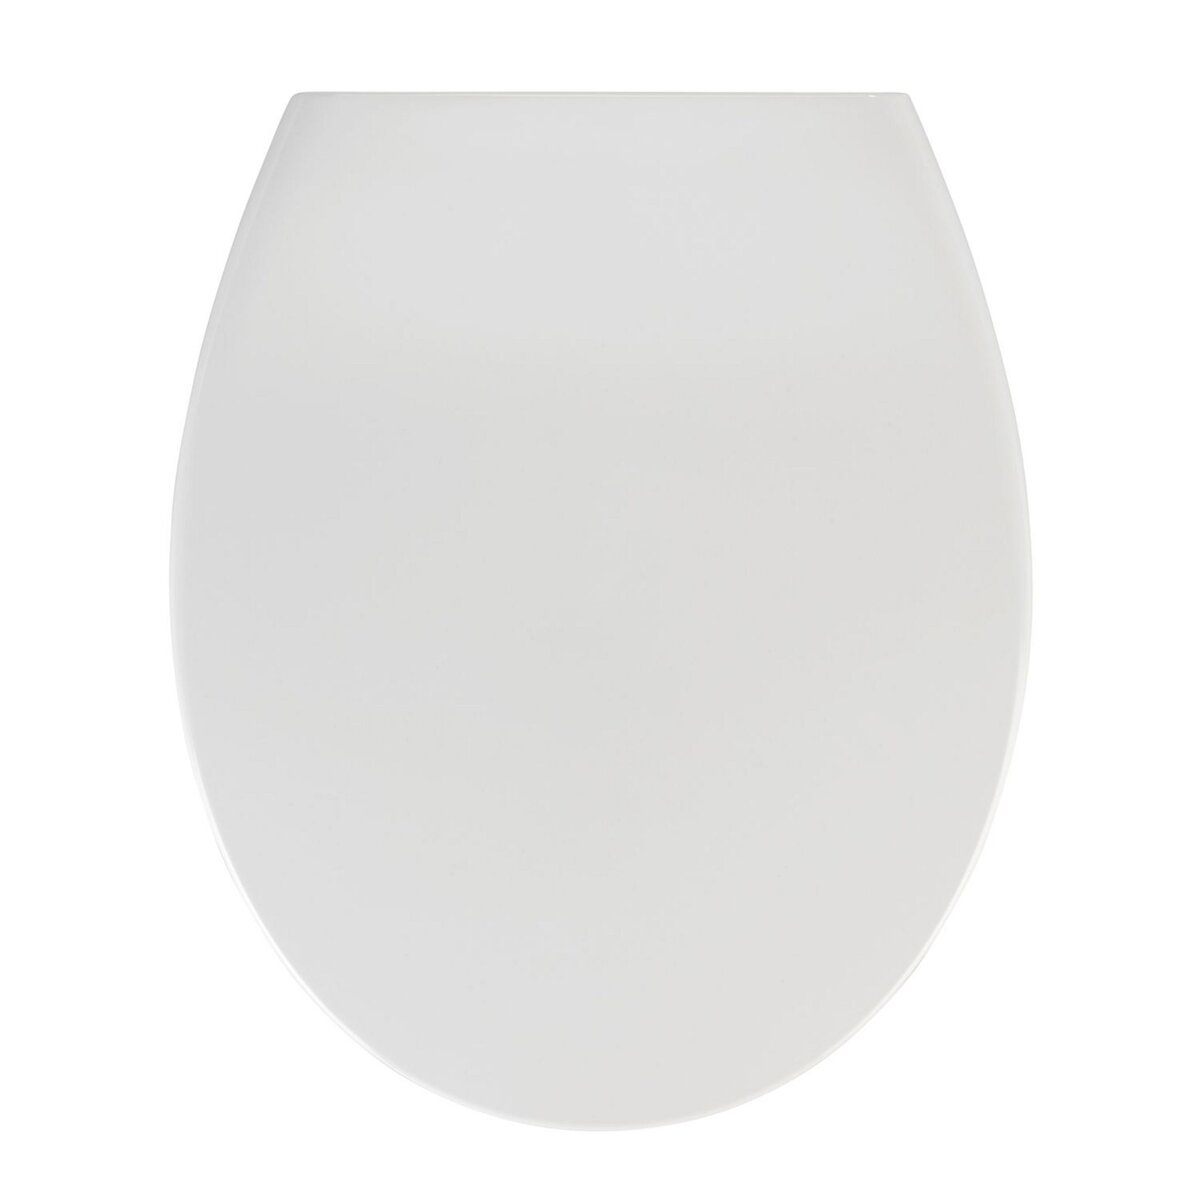 WENKO Abattant WC avec frein de chute 'Easy Close' Ostuni, abattant WC  clipsable Fix Clip avec fixation inox, capacité de charge jusqu'à 300kg,  thermoplastique, 37 x 44,5 cm, blanc